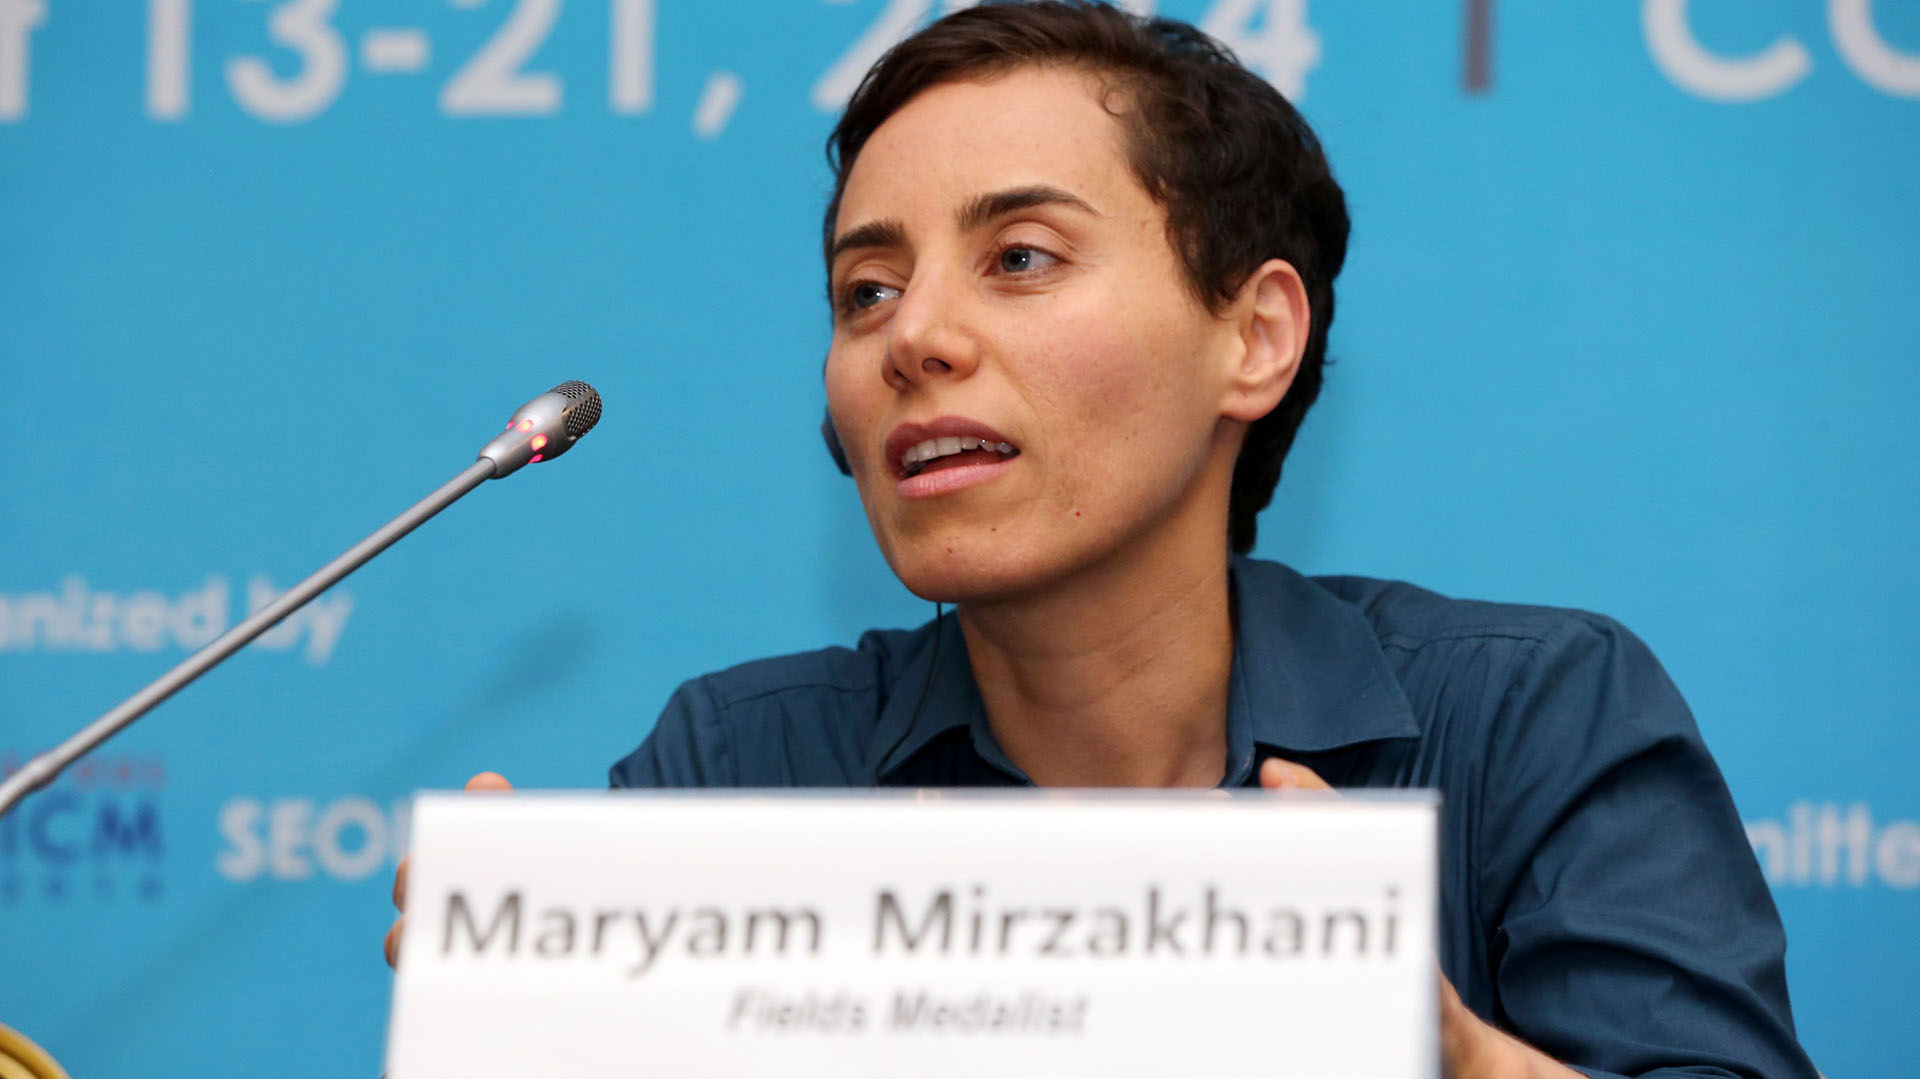  La iraní Maryam Mirzakhani fue la primera mujer galardonada con la Medalla Fields, uno de los premios más prestigiosos en matemática. (AFP)